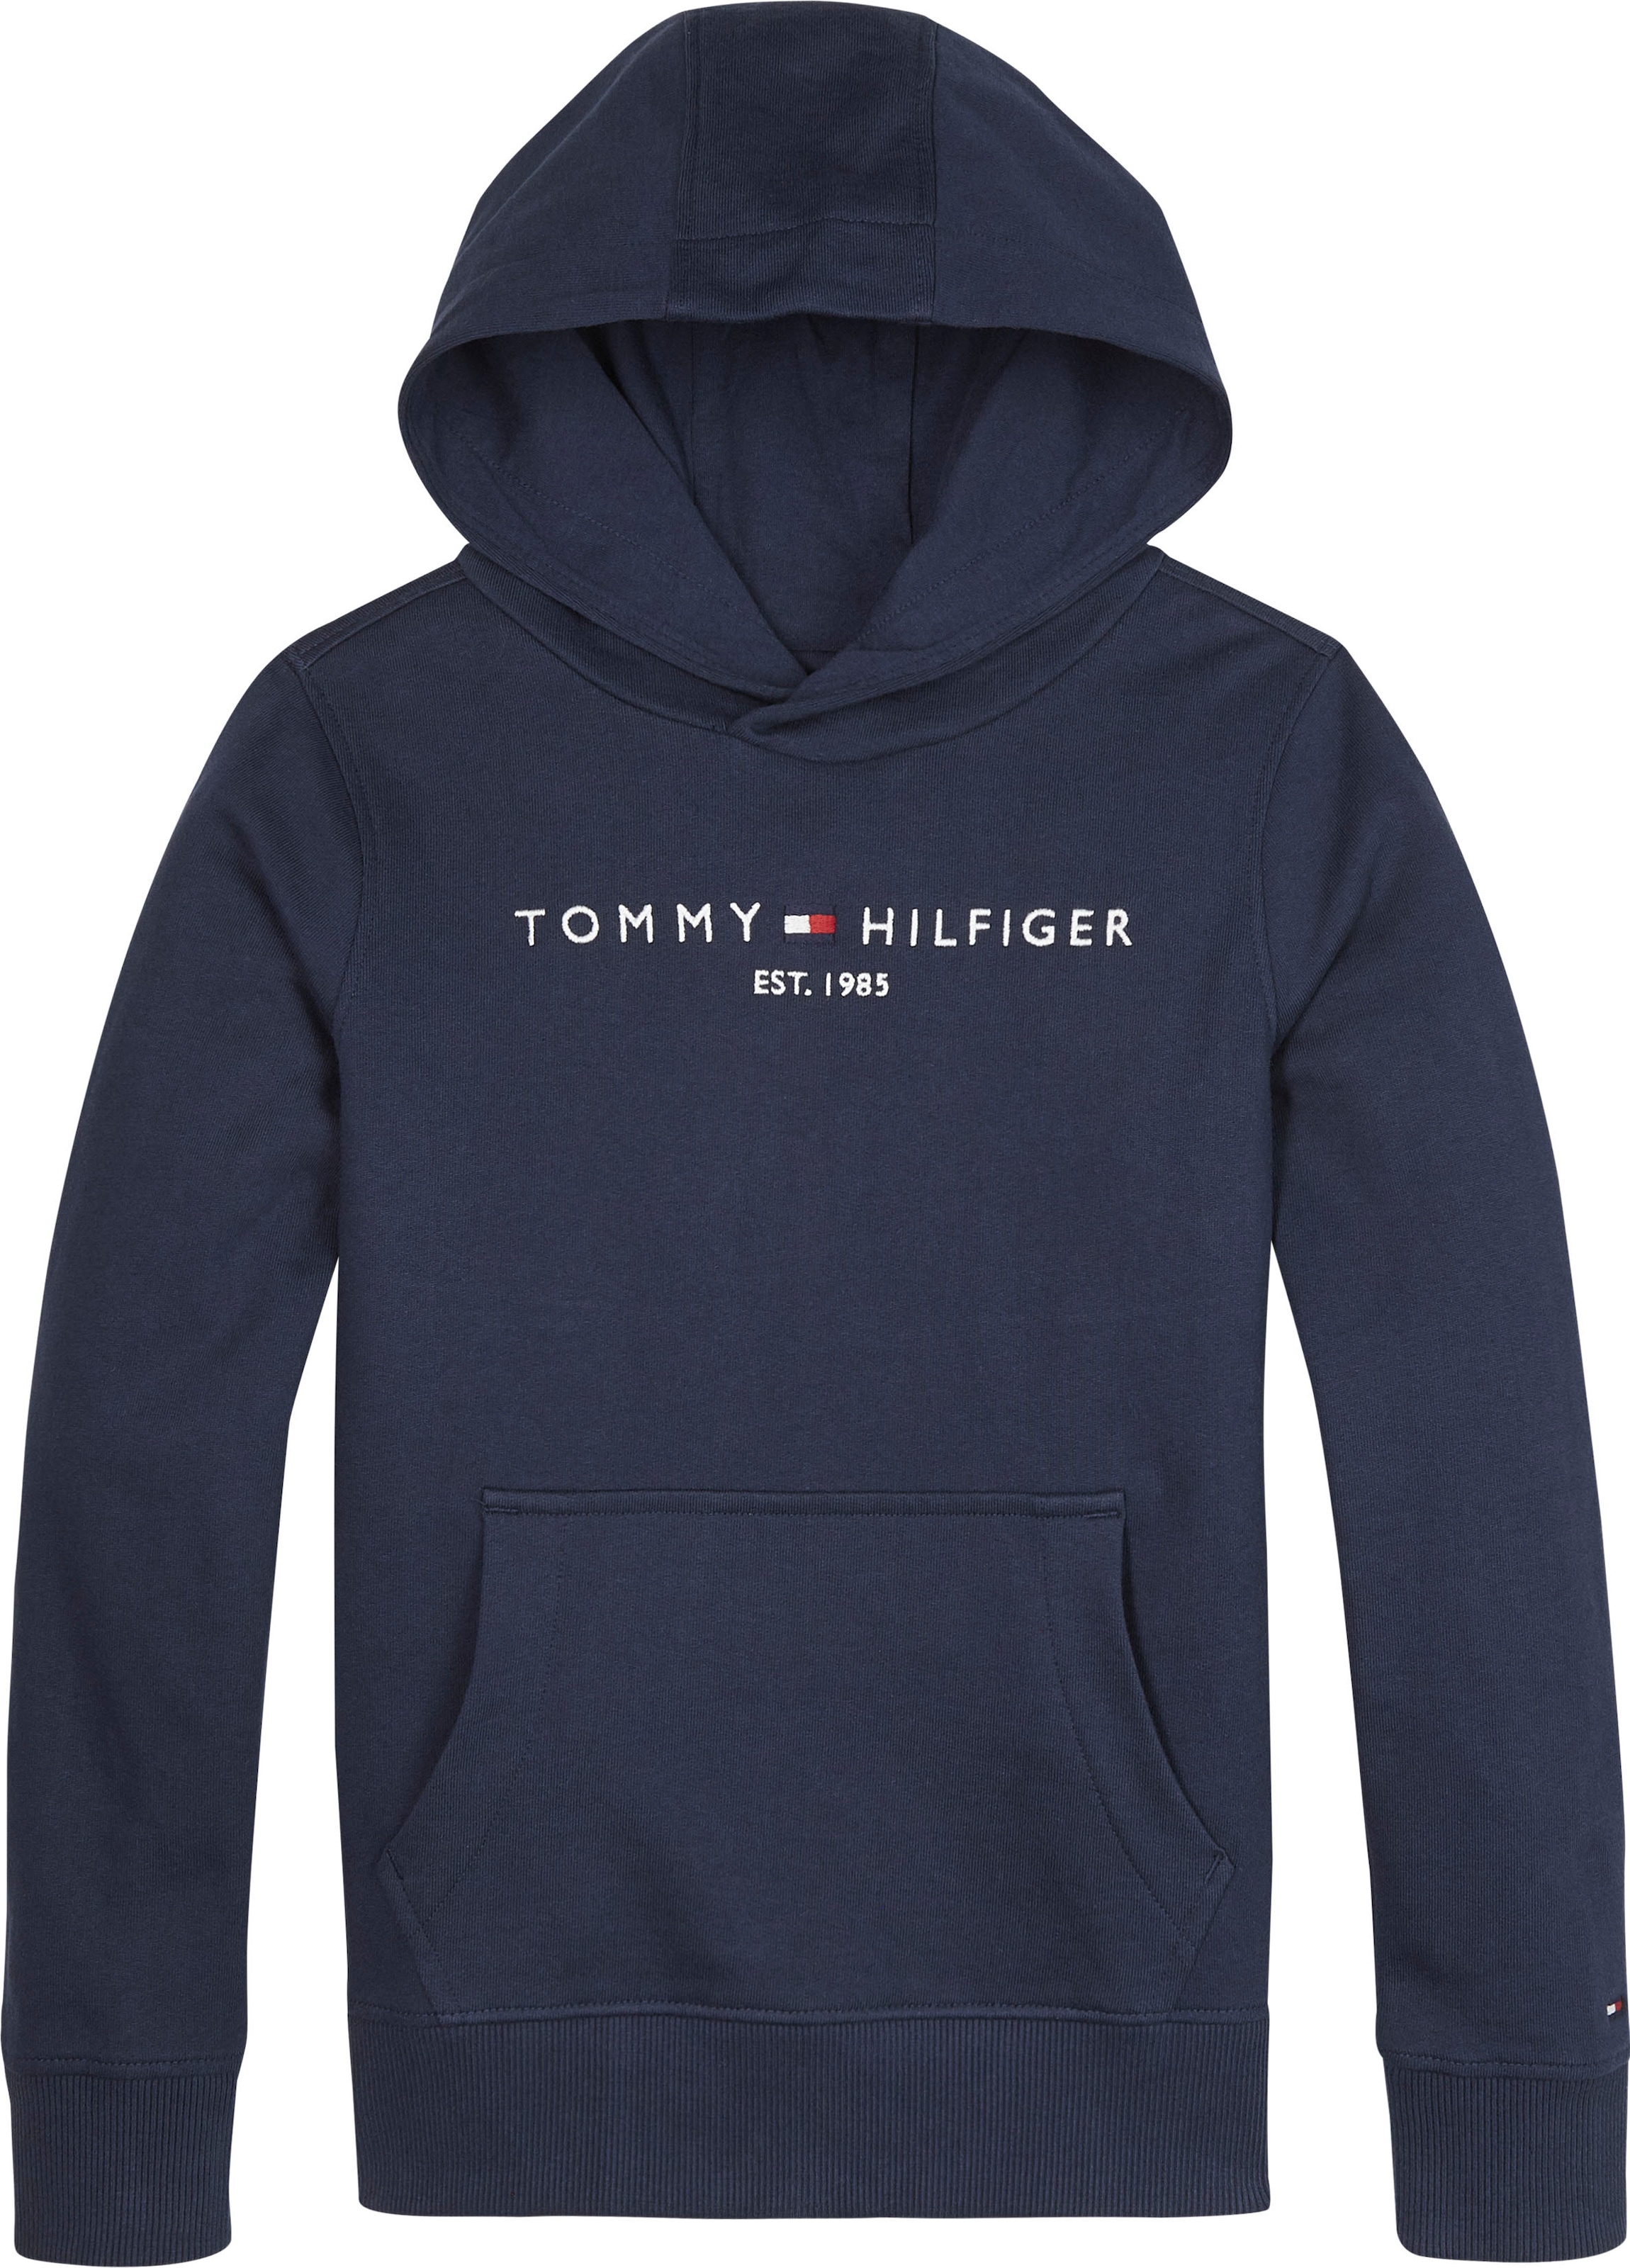 Mädchen kaufen Kids Junior Jungen Kinder Kapuzensweatshirt bei OTTO Tommy Hilfiger HOODIE«, »ESSENTIAL und MiniMe,für